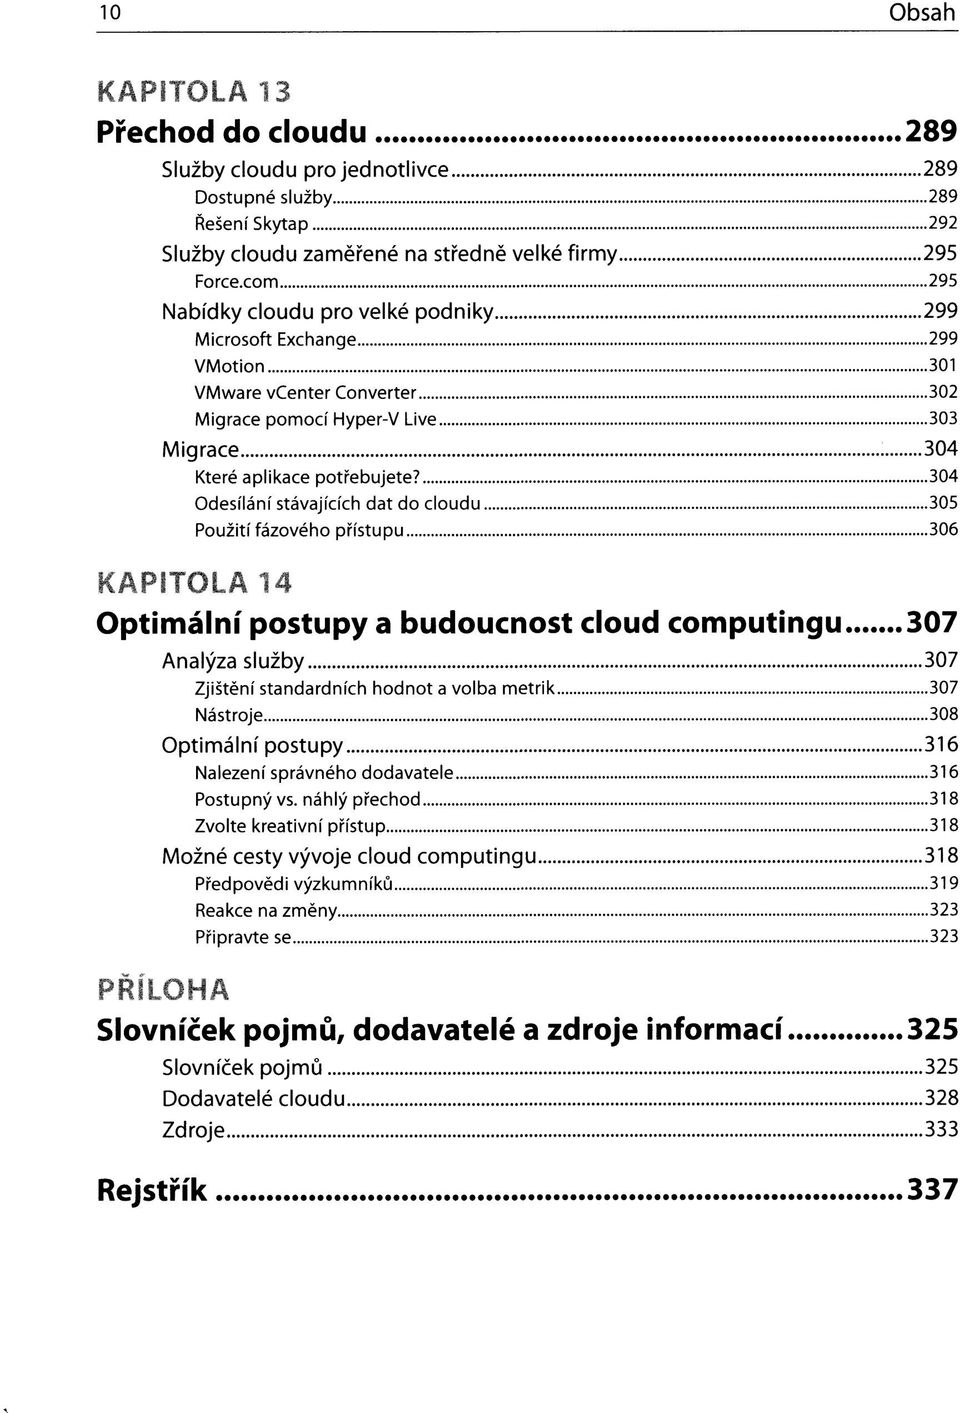 304 Odesílání stávajících dat do cloudu 305 Použití fázového přístupu 306 KAPITOLA 14 Optimální postupy a budoucnost cloud computingu 307 Analýza služby 307 Zjištění standardních hodnot a volba